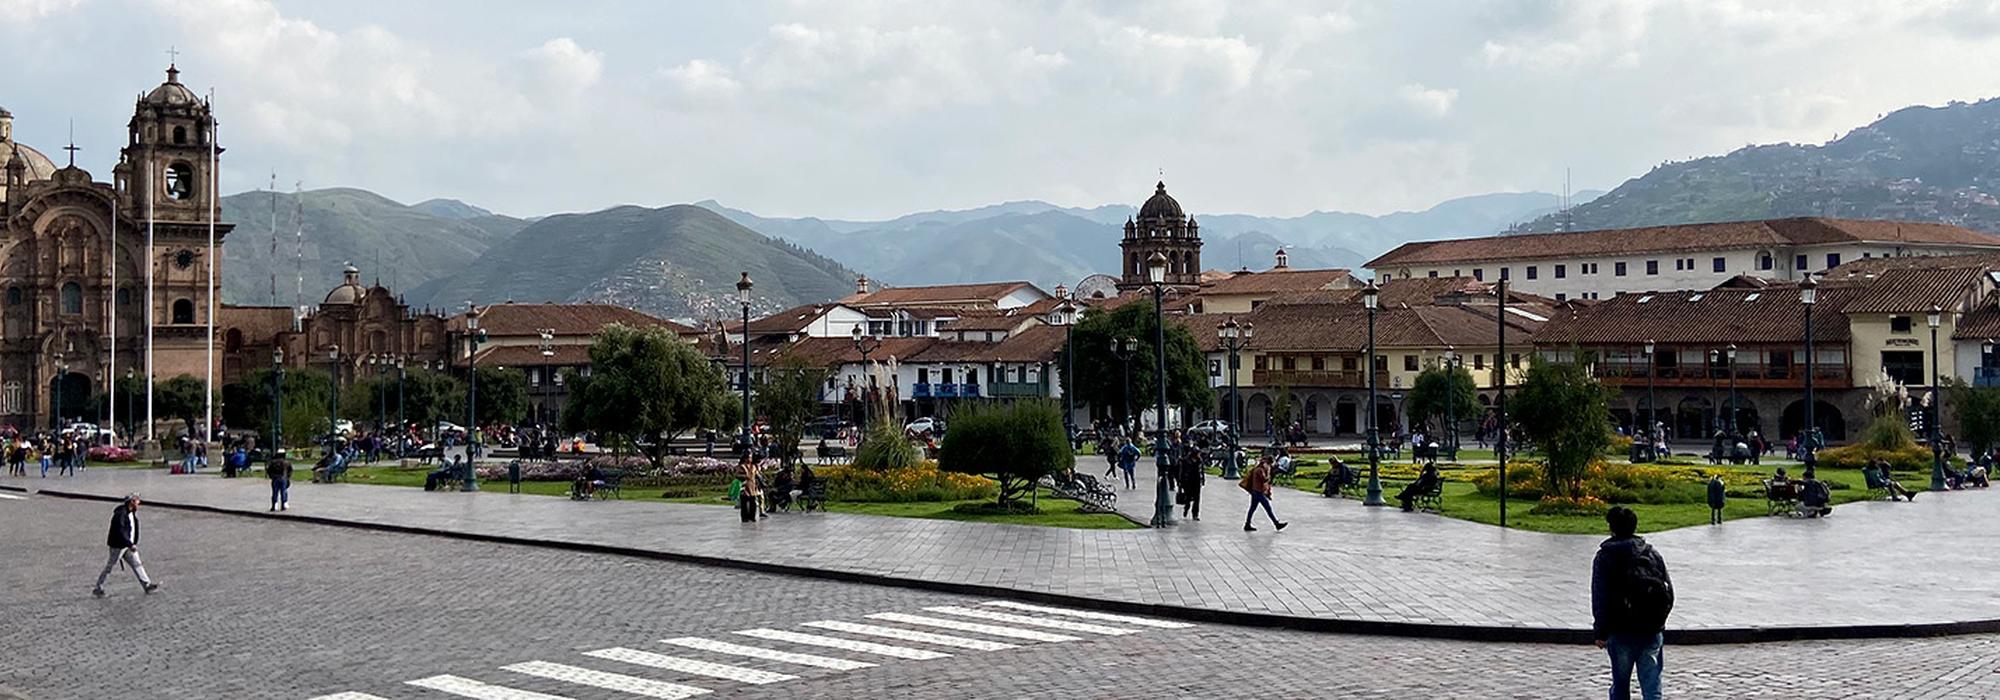 street view in Cusco, Peru